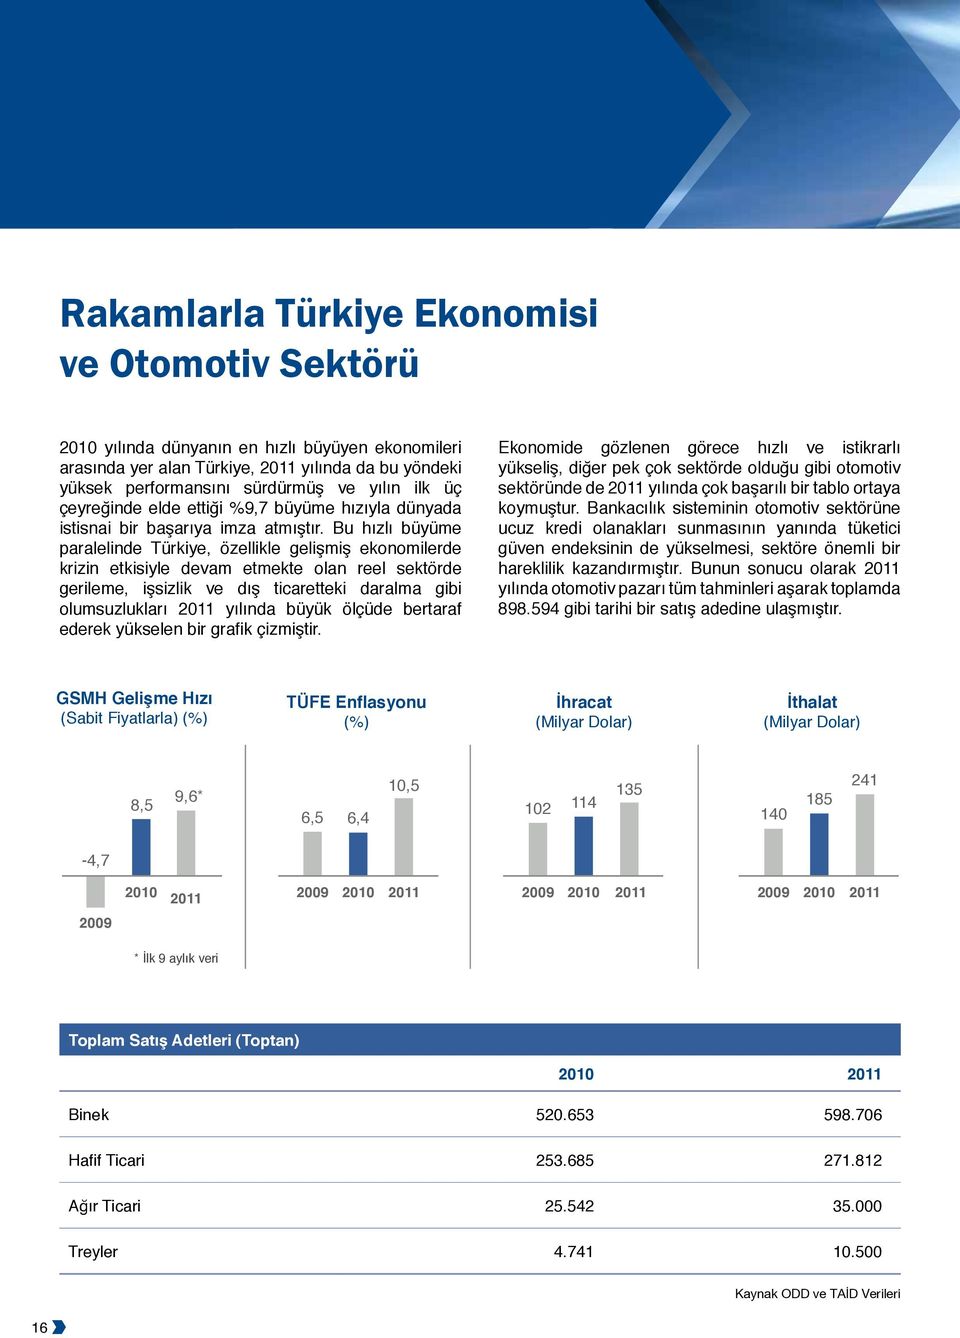 Bu hızlı büyüme paralelinde Türkiye, özellikle gelişmiş ekonomilerde krizin etkisiyle devam etmekte olan reel sektörde gerileme, işsizlik ve dış ticaretteki daralma gibi olumsuzlukları 2011 yılında